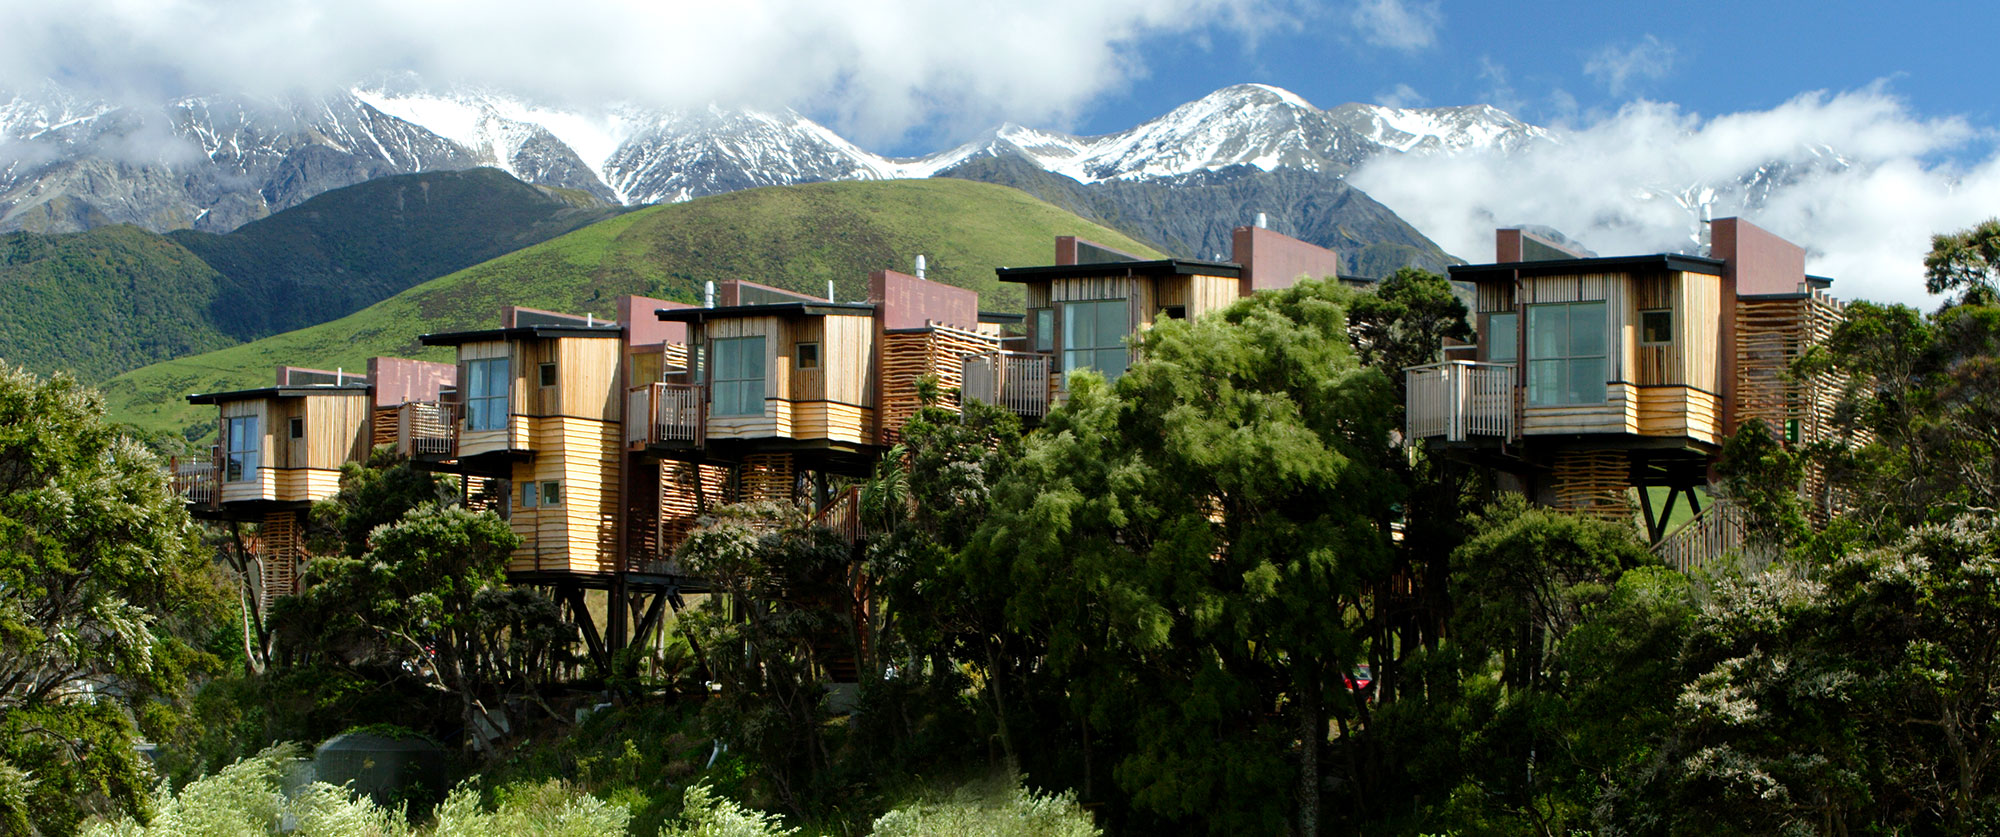 Indulgent Escape: New Zealand Luxury Vacation - Hapuku Lodge Luxury Treehouses